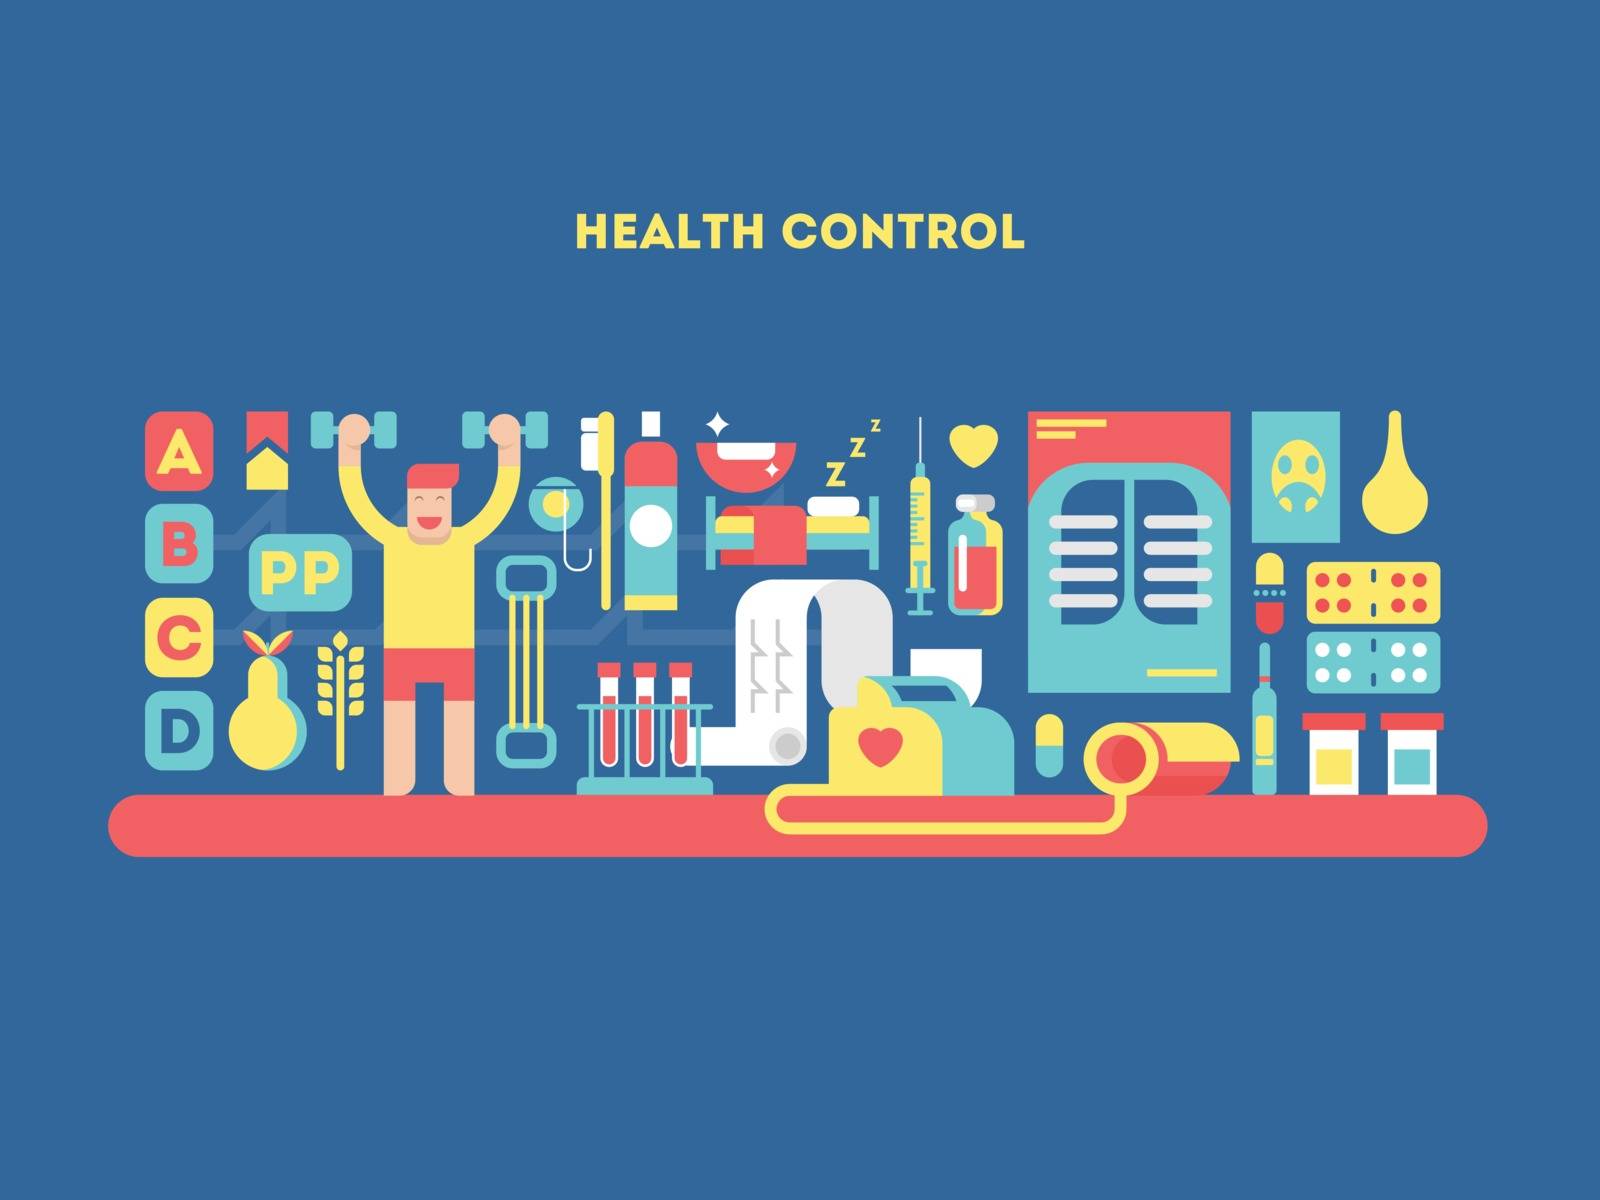 Health control design concept by jossdiim